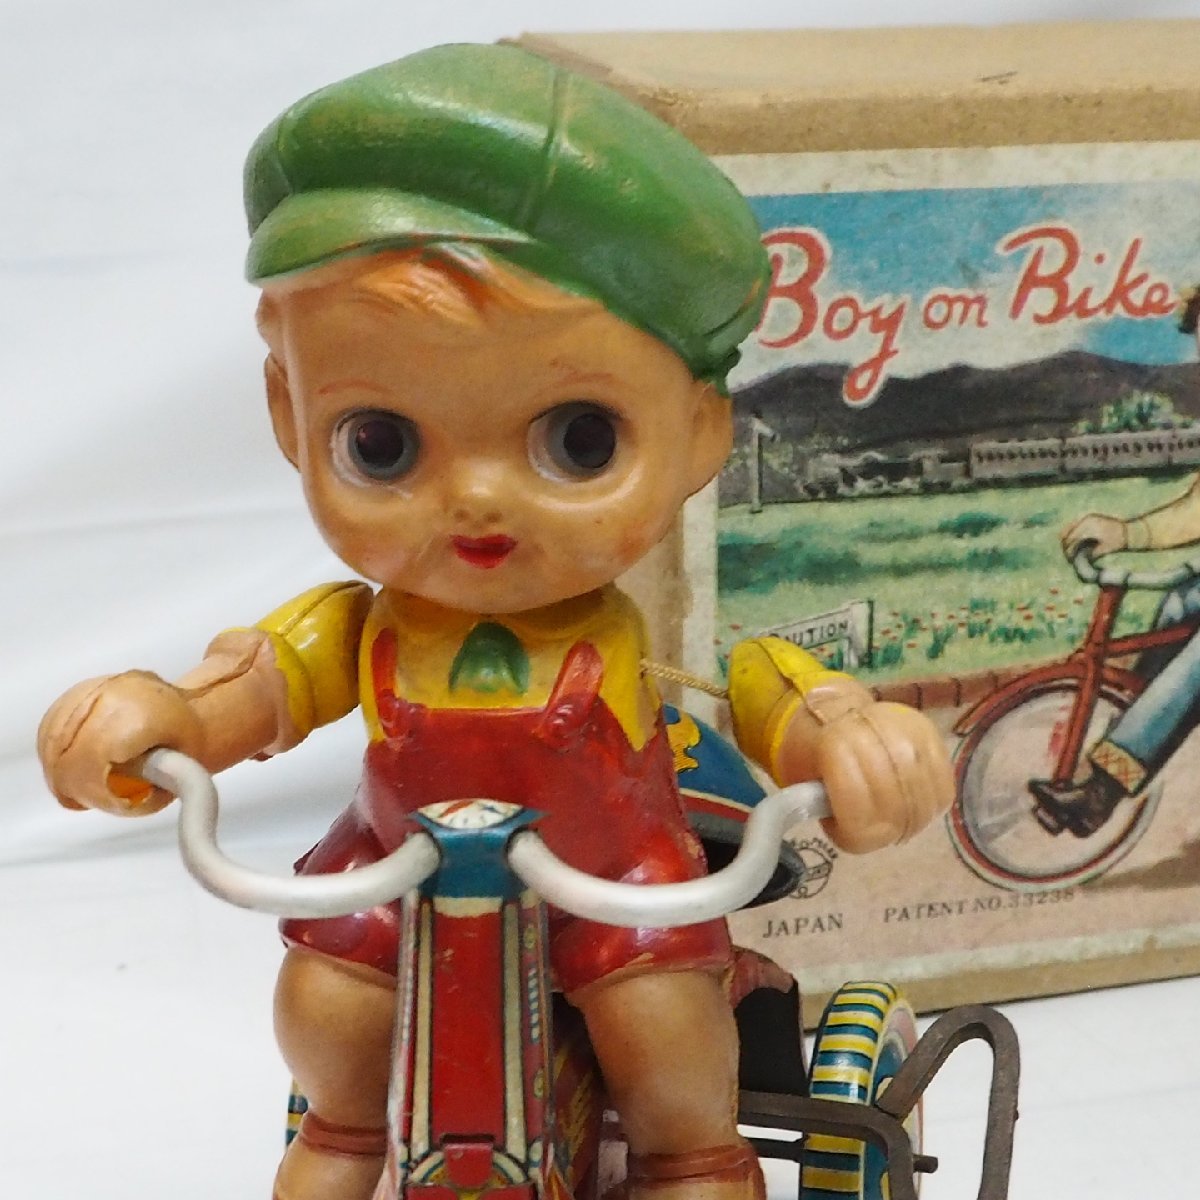  cell Lloyd кукла жестяная пластина трехколесный велосипед средний размер [Boy on BIikezen мой мотоцикл ] сделано в Японии tin toy car#SUZUKI Suzuki [ с ящиком ] включая доставку 